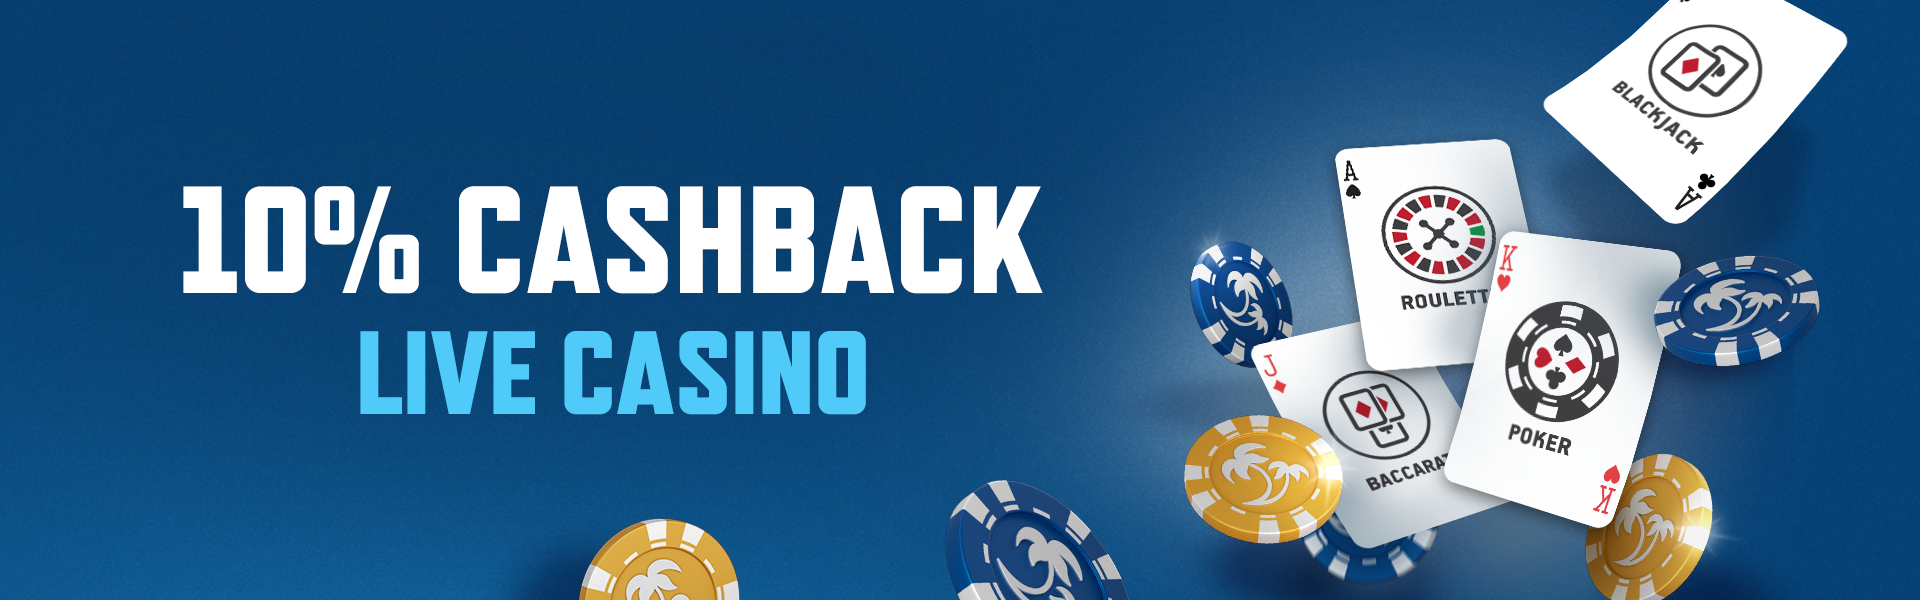 poker online bonus cashback - online casino Singapore